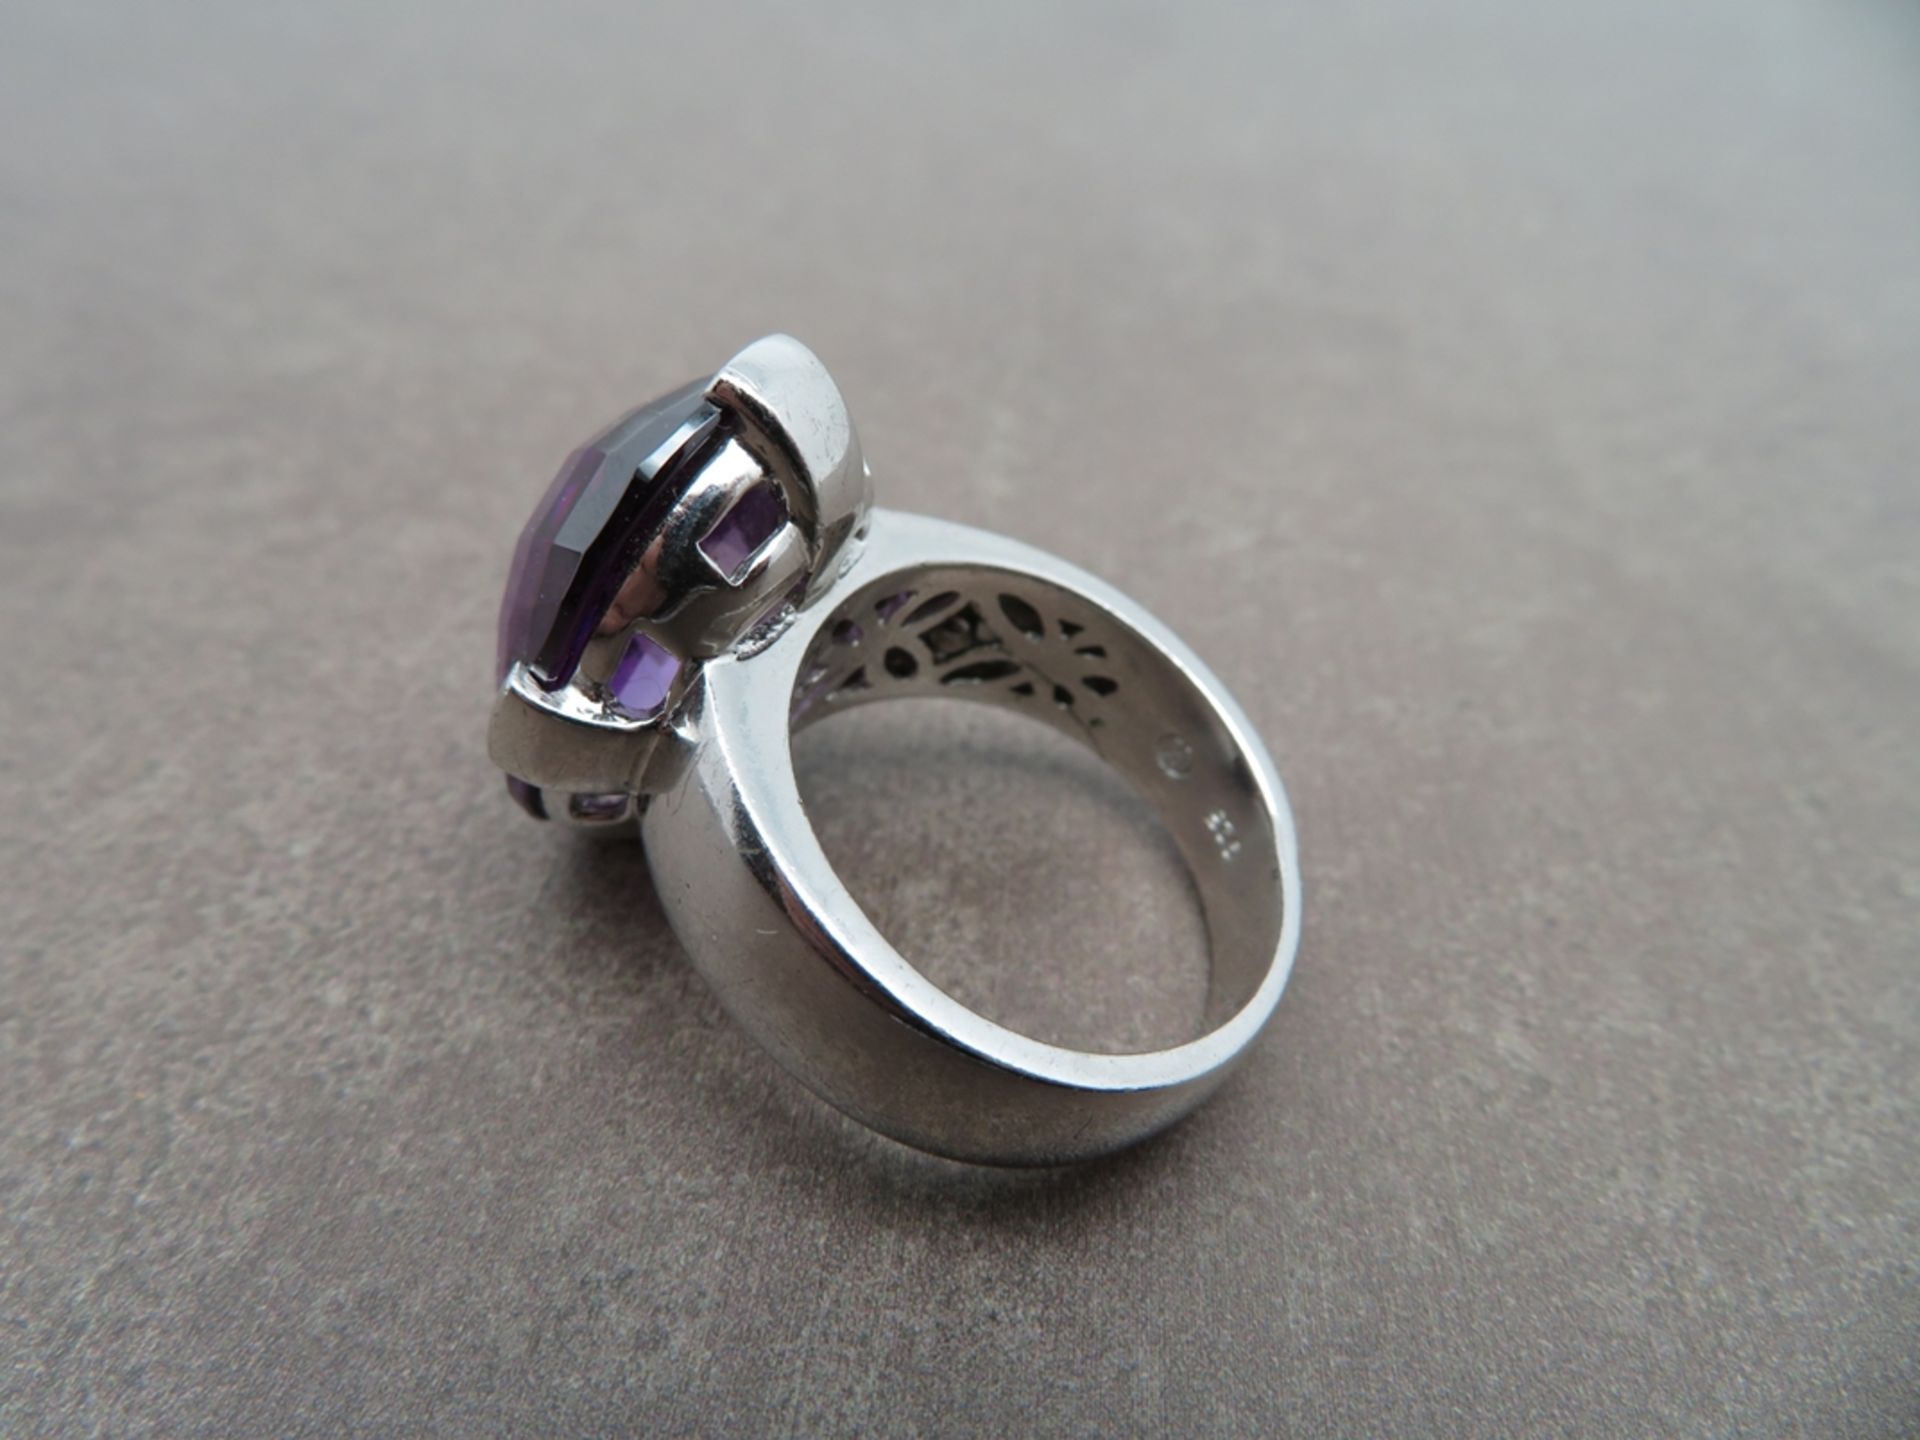 Designer Ring mit großem, facettiertem Amethyst, Silber 925/000, gepunzt, sign., WBW €140.-, Amethy - Bild 2 aus 2